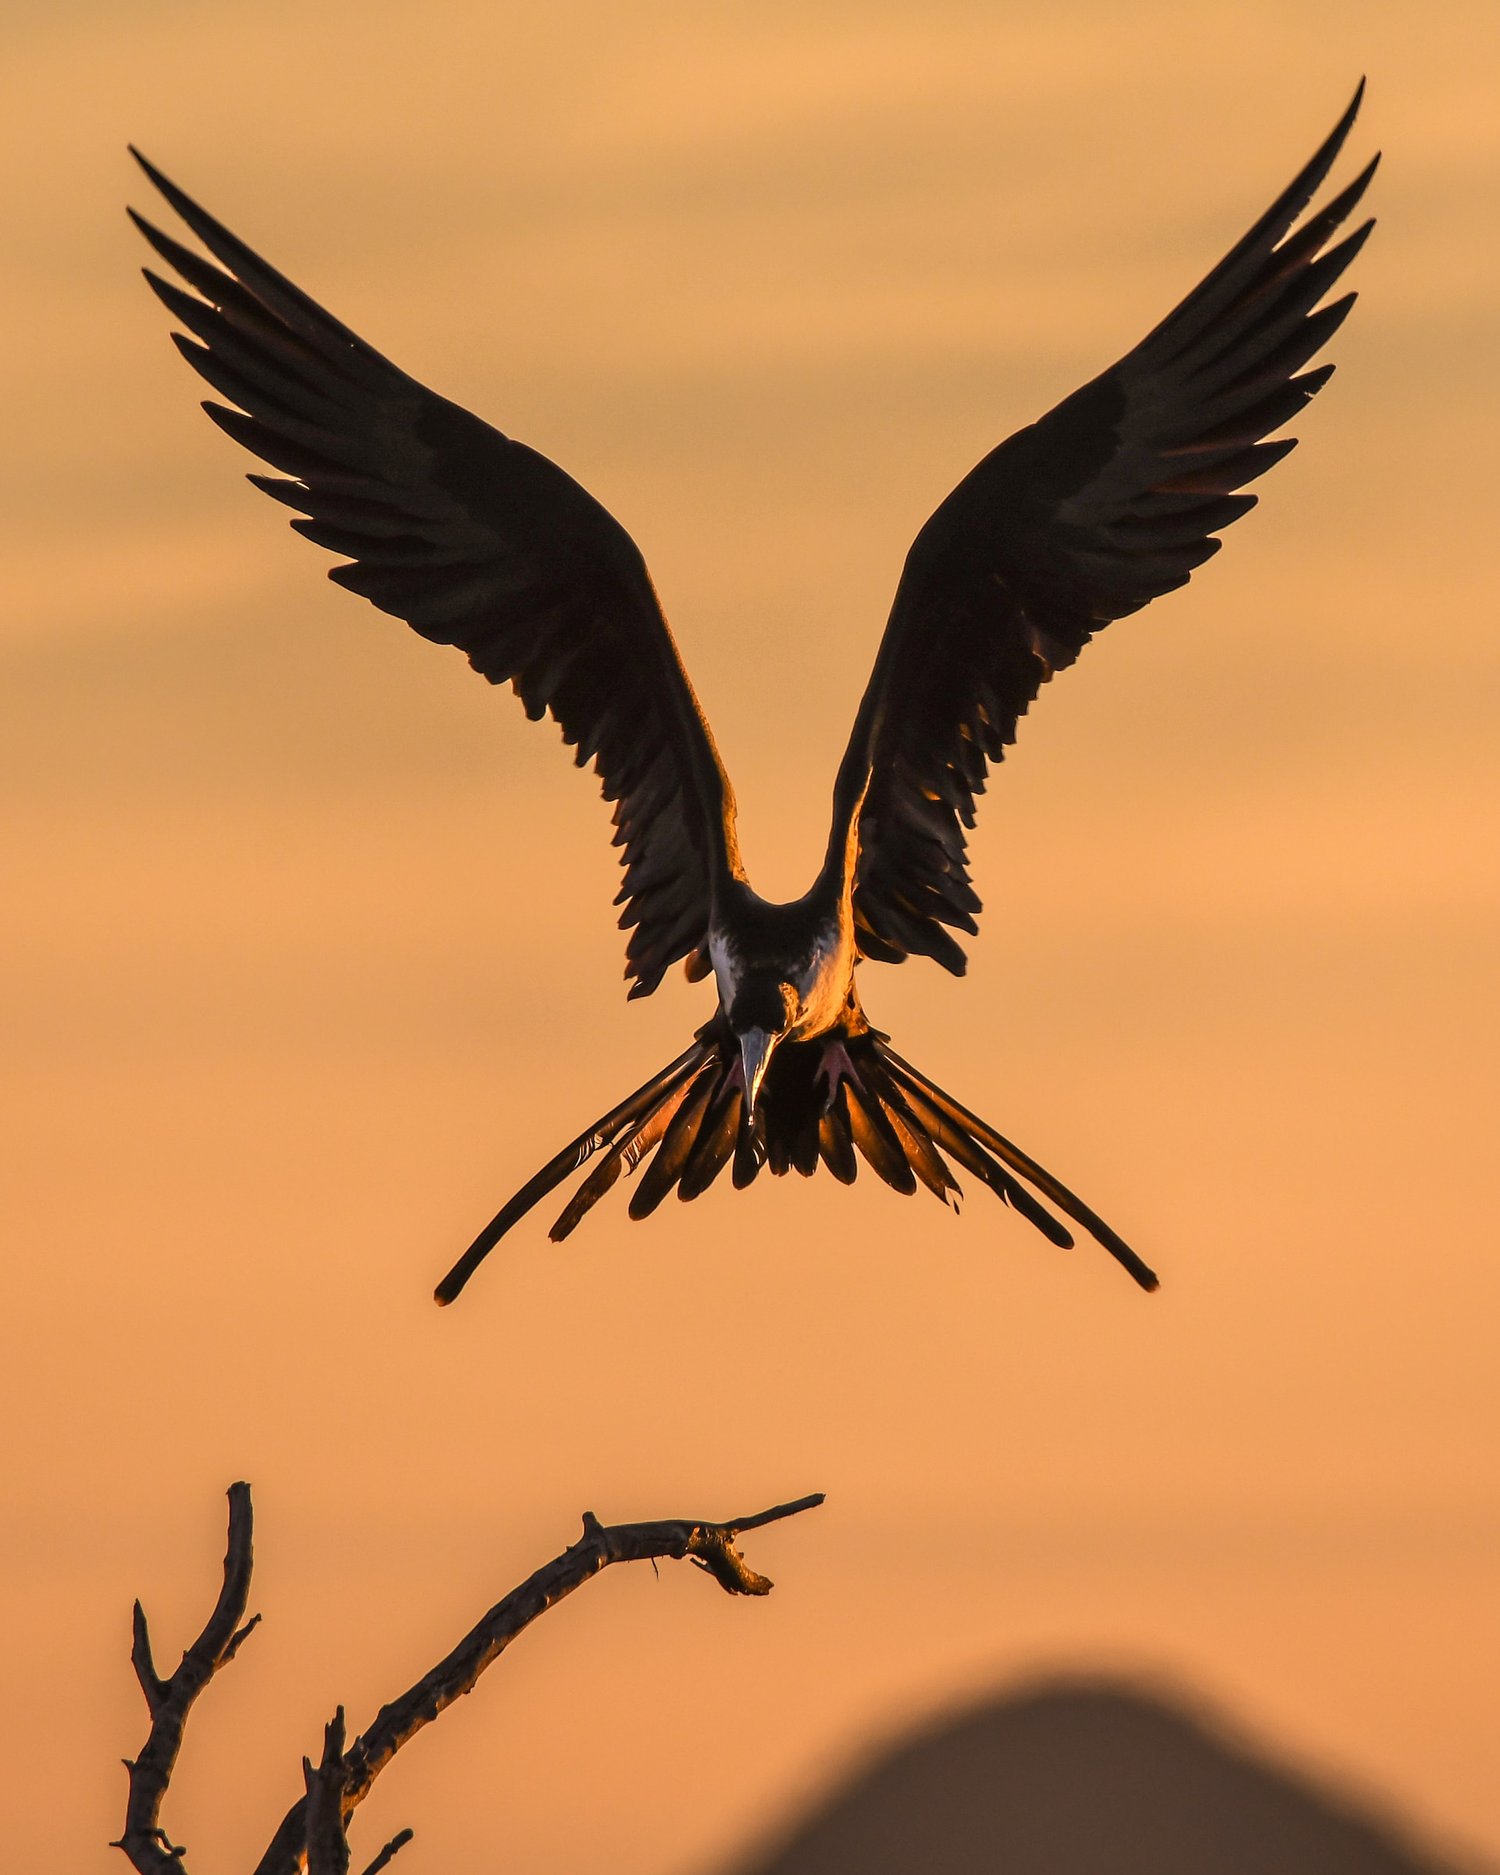 A falcon in flight - Kestrel the falcon prince